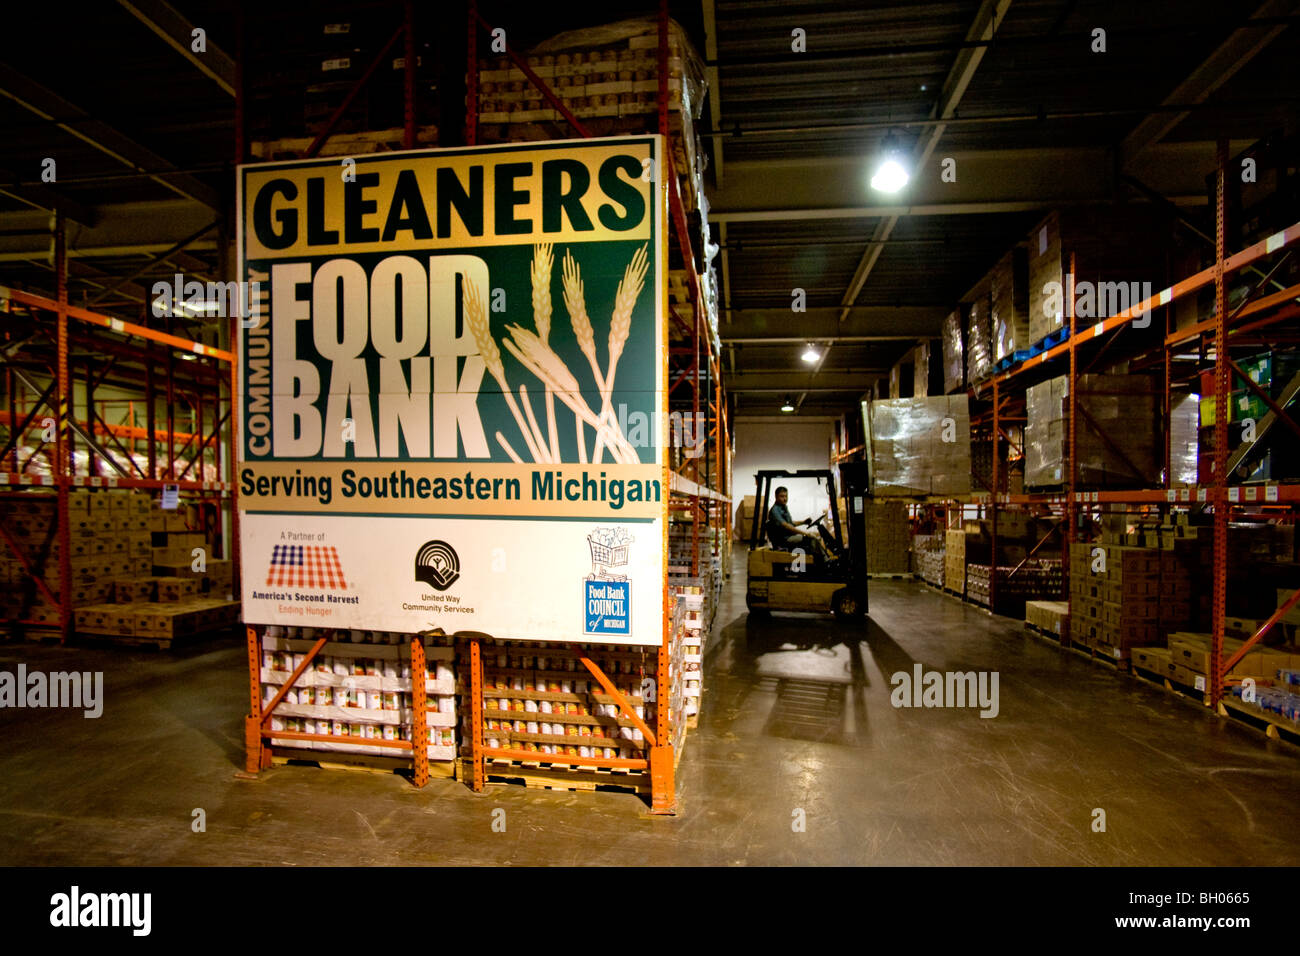 Ein Gabelstapler verarbeitet große Nahrungsmittelvorräte an die Ährenleser Lebensmittelbank in Detroit, Michigan während der Rezession in der Stadt Auto-Industrie. Stockfoto